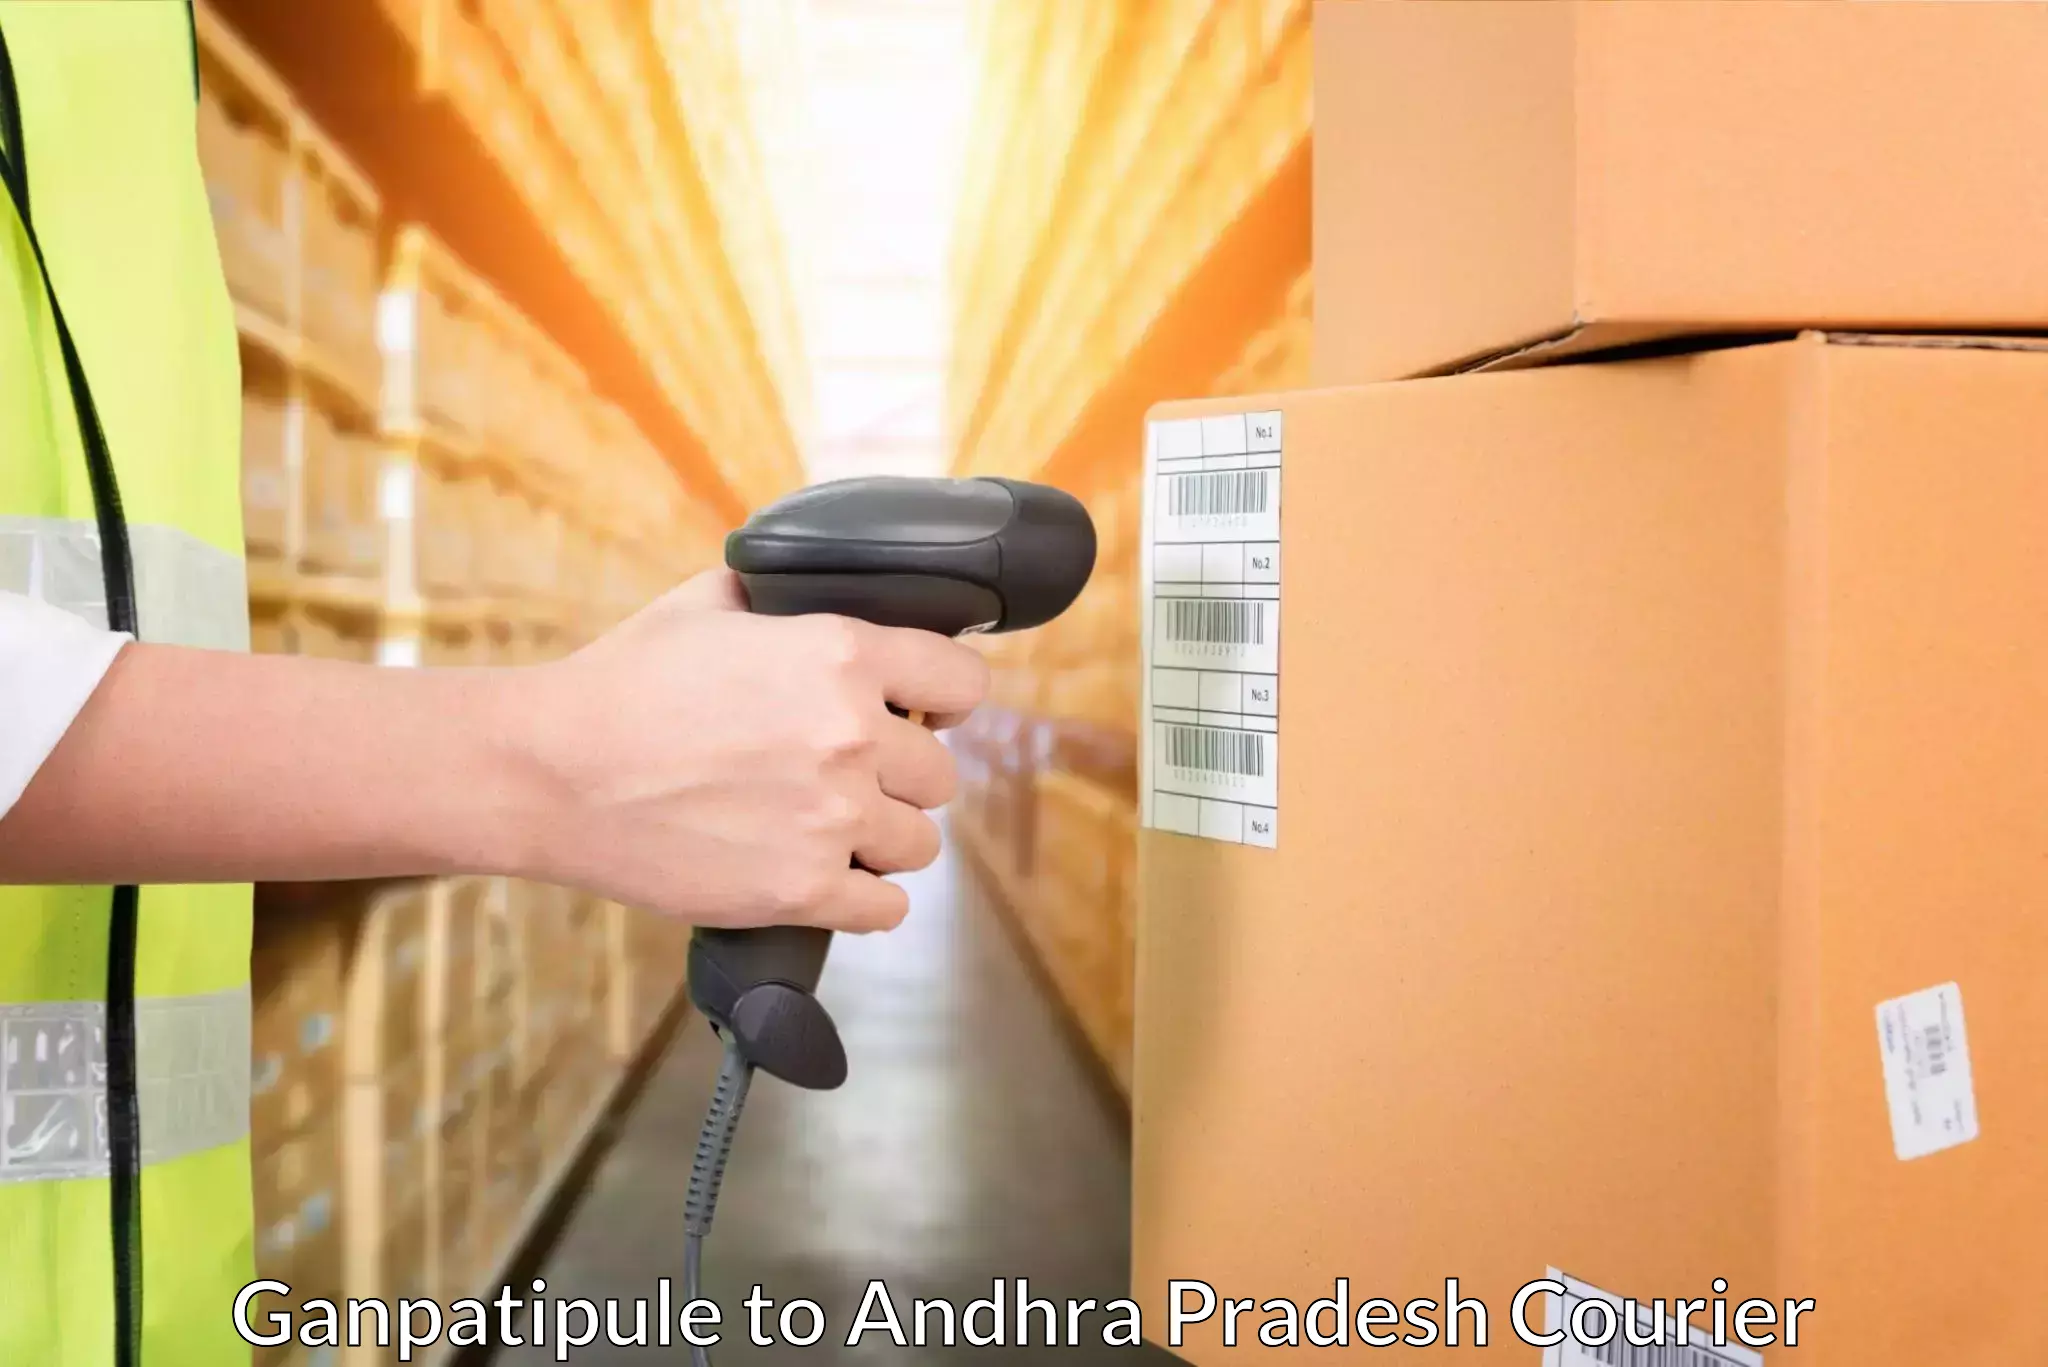 Package consolidation in Ganpatipule to Rampachodavaram